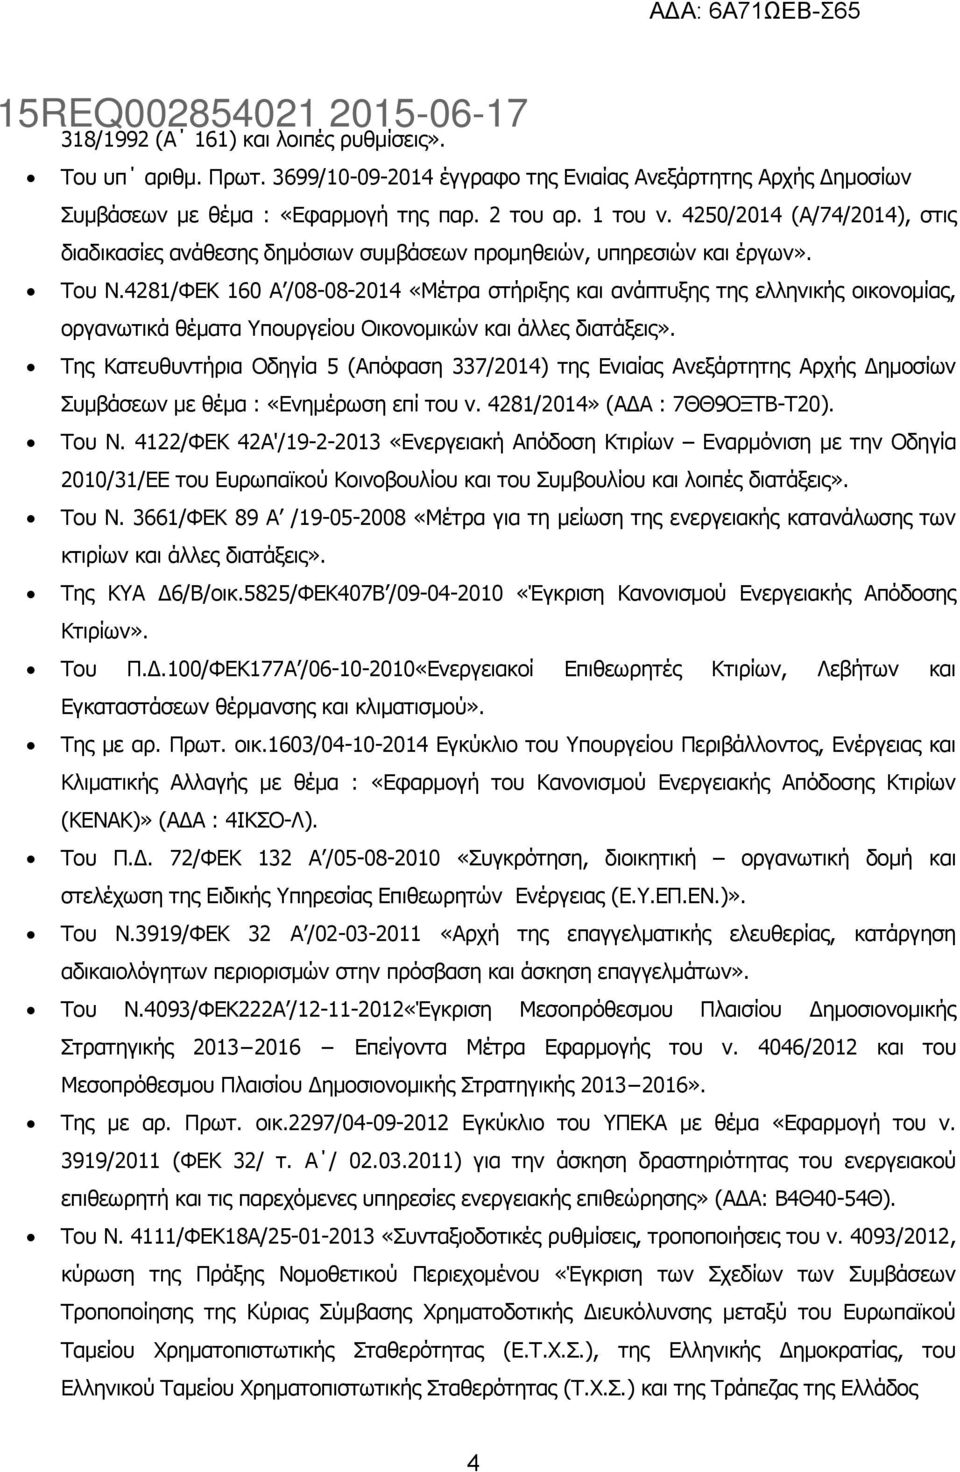 4281/ΦΕΚ 160 Α /08-08-2014 «Μέτρα στήριξης και ανάπτυξης της ελληνικής οικονομίας, οργανωτικά θέματα Υπουργείου Οικονομικών και άλλες διατάξεις».